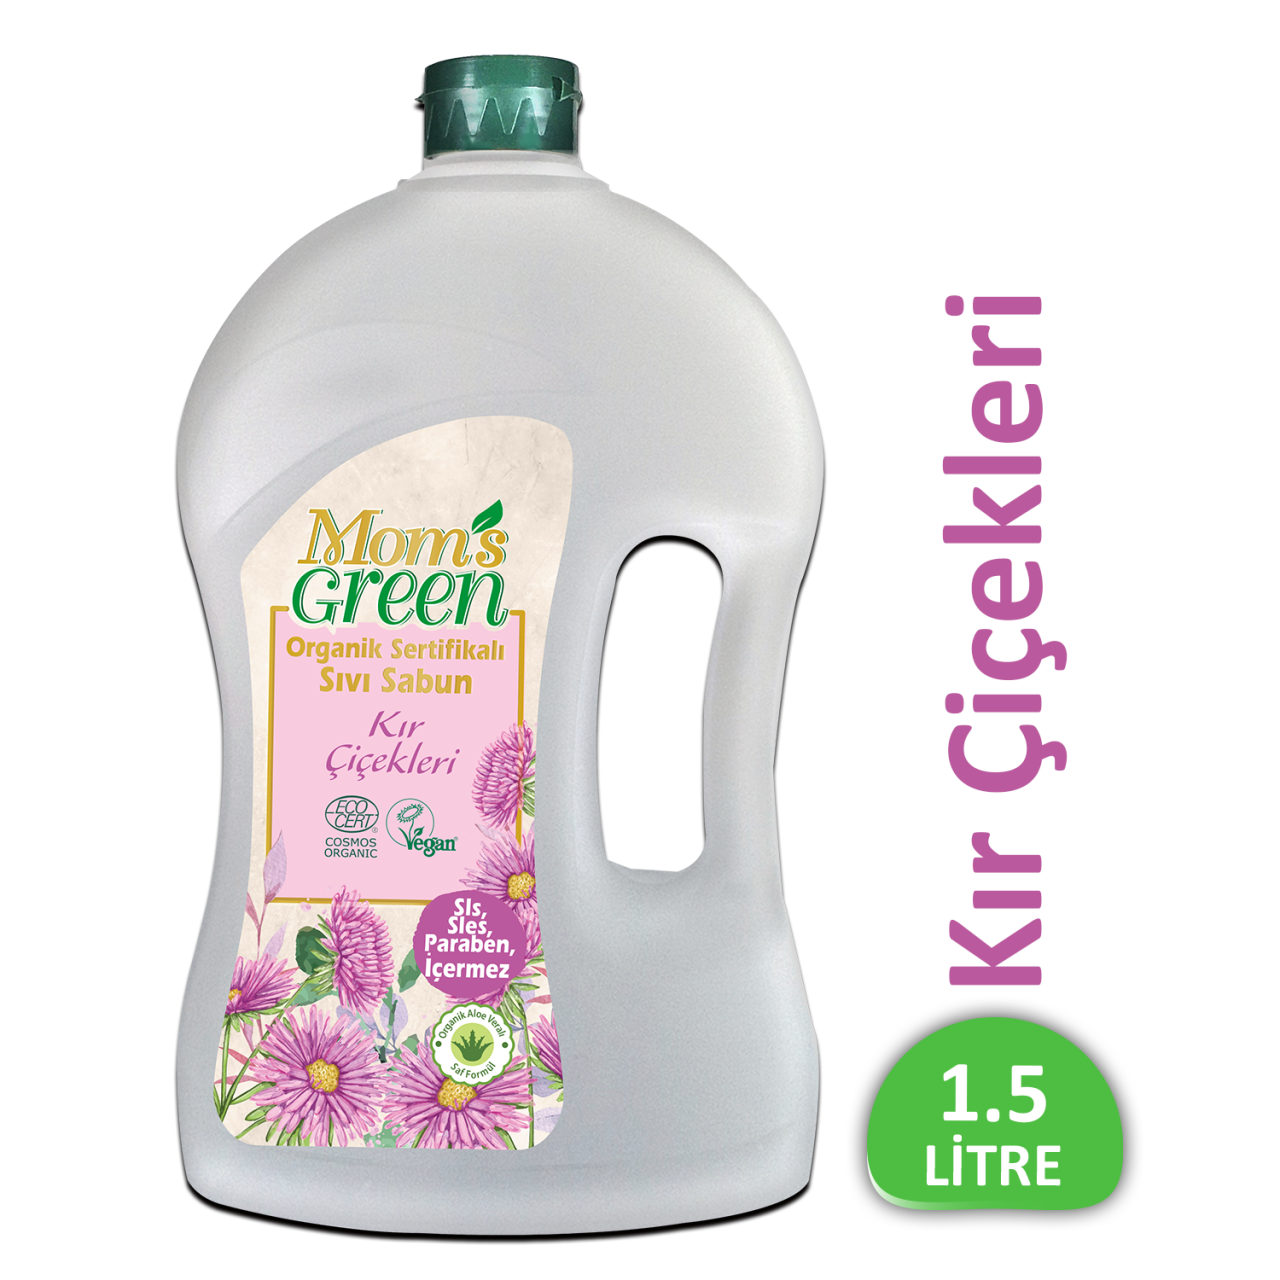 Mom's Green Organik Sertifikalı Sıvı Sabun - Kır Çiçekleri  1.5 Lt EcoCosmos